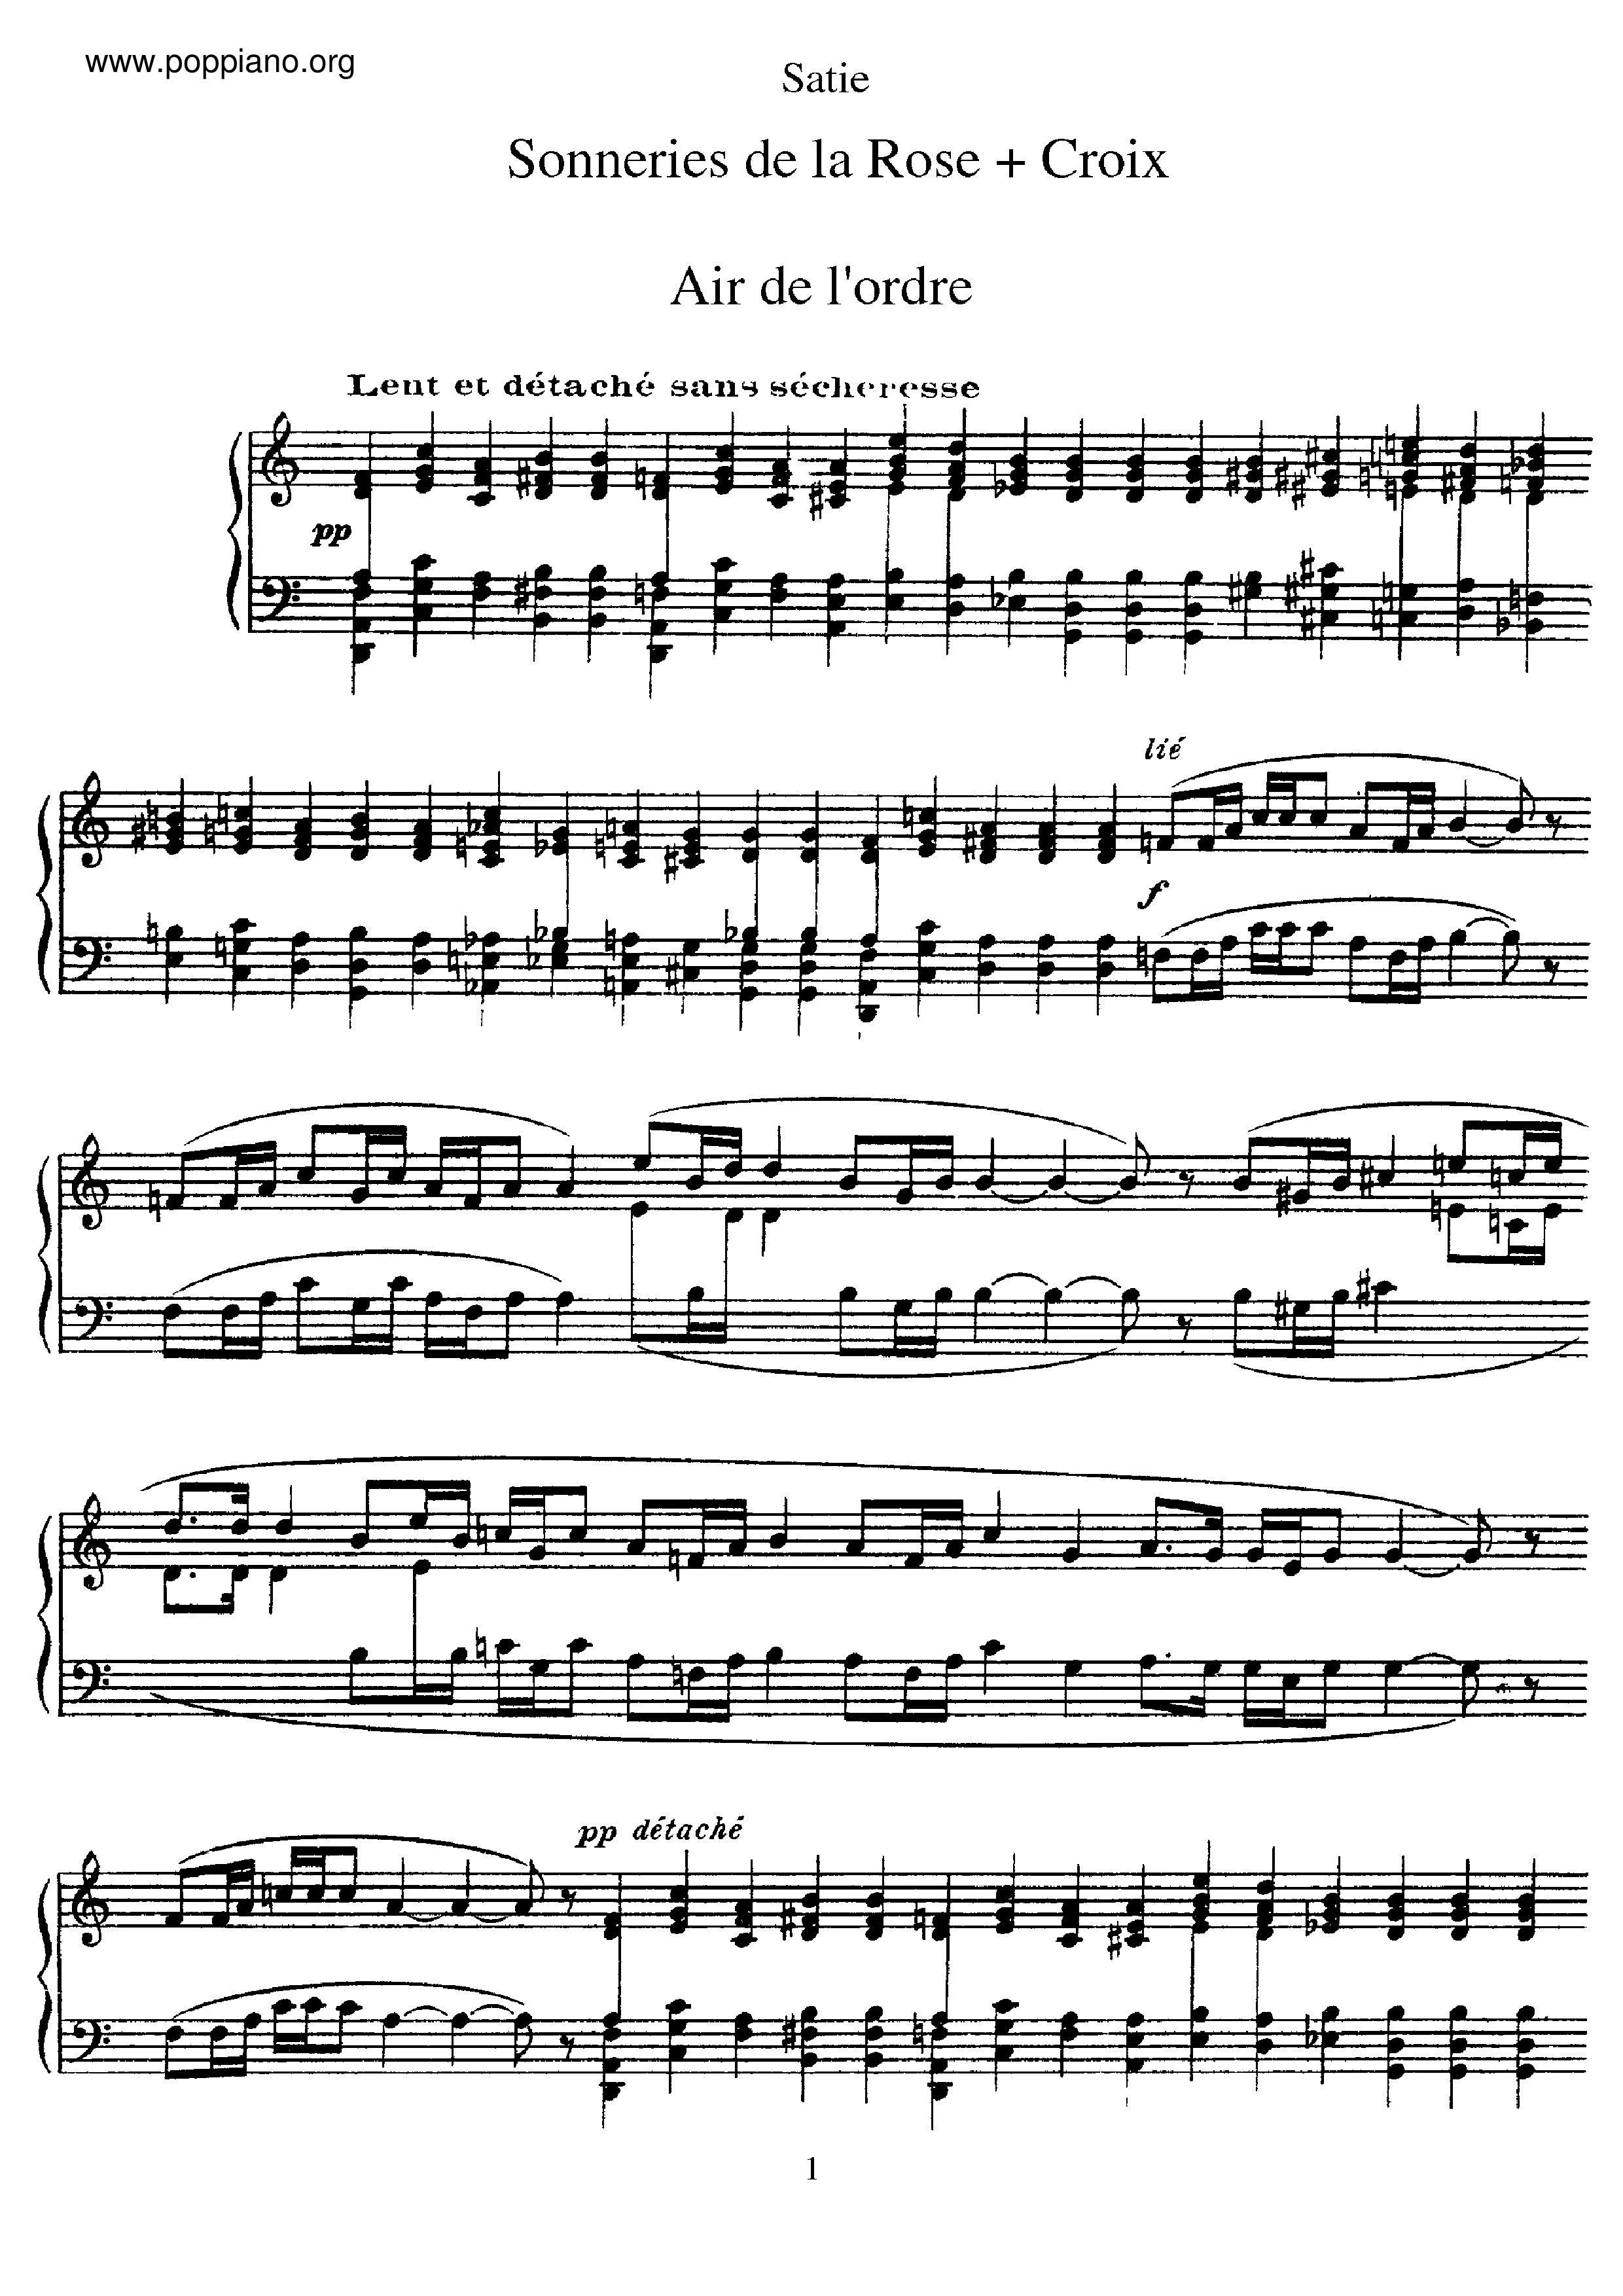 Sonneries de la rose croixピアノ譜